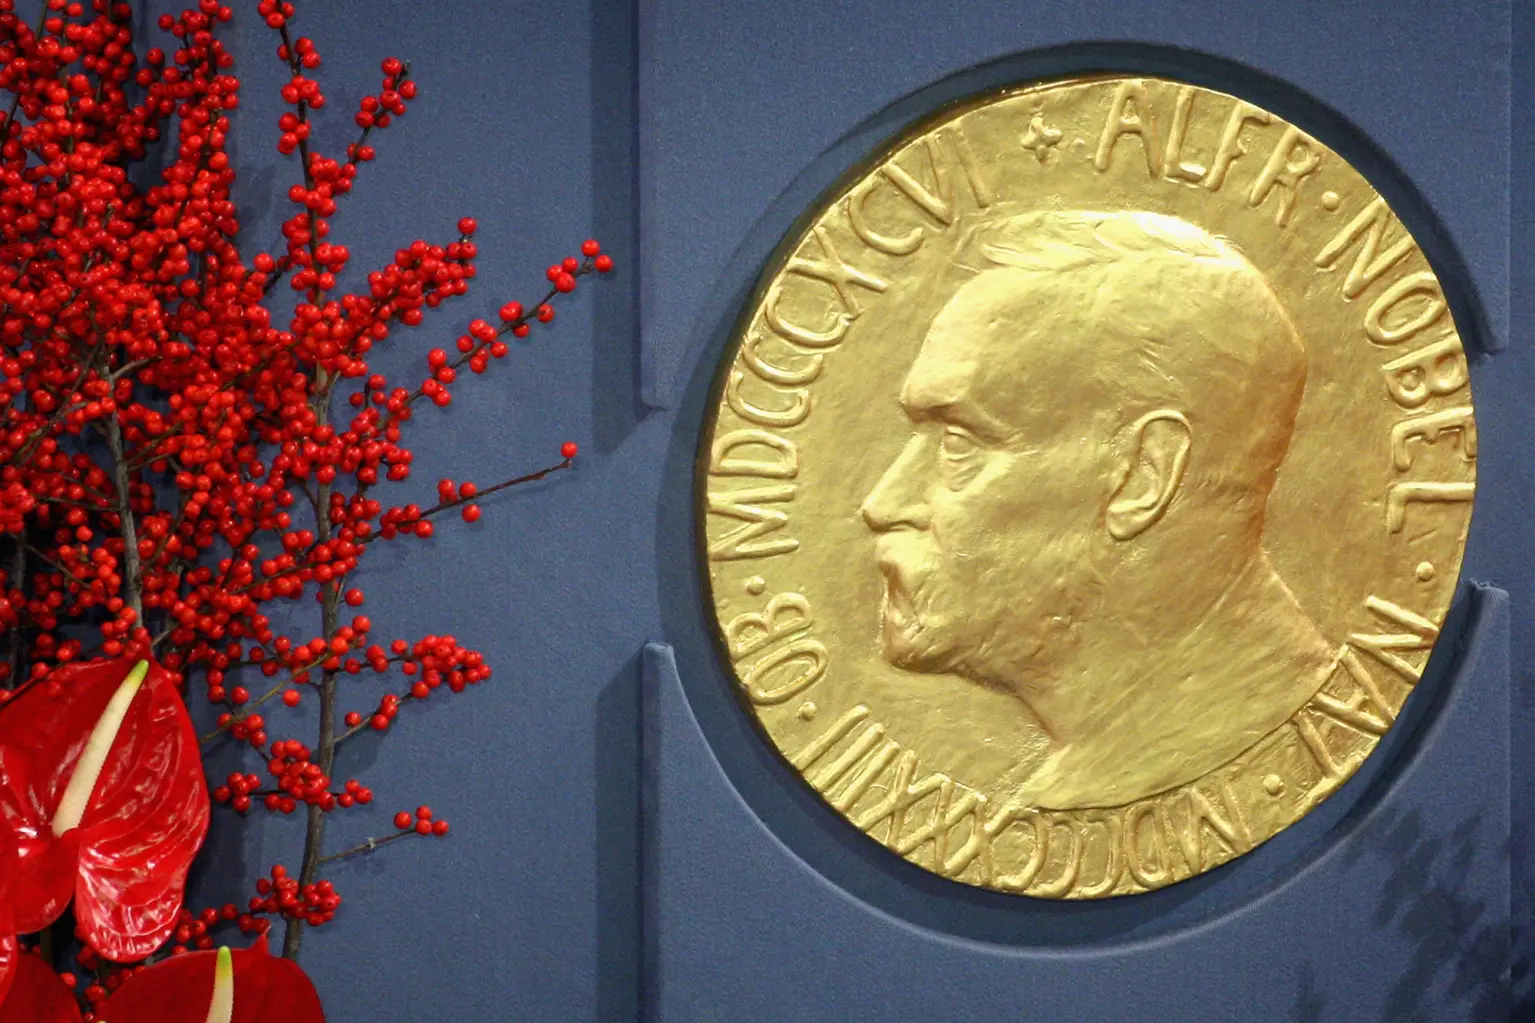 Literacka Nagroda Nobla – jak zapisywać nazwy nagród